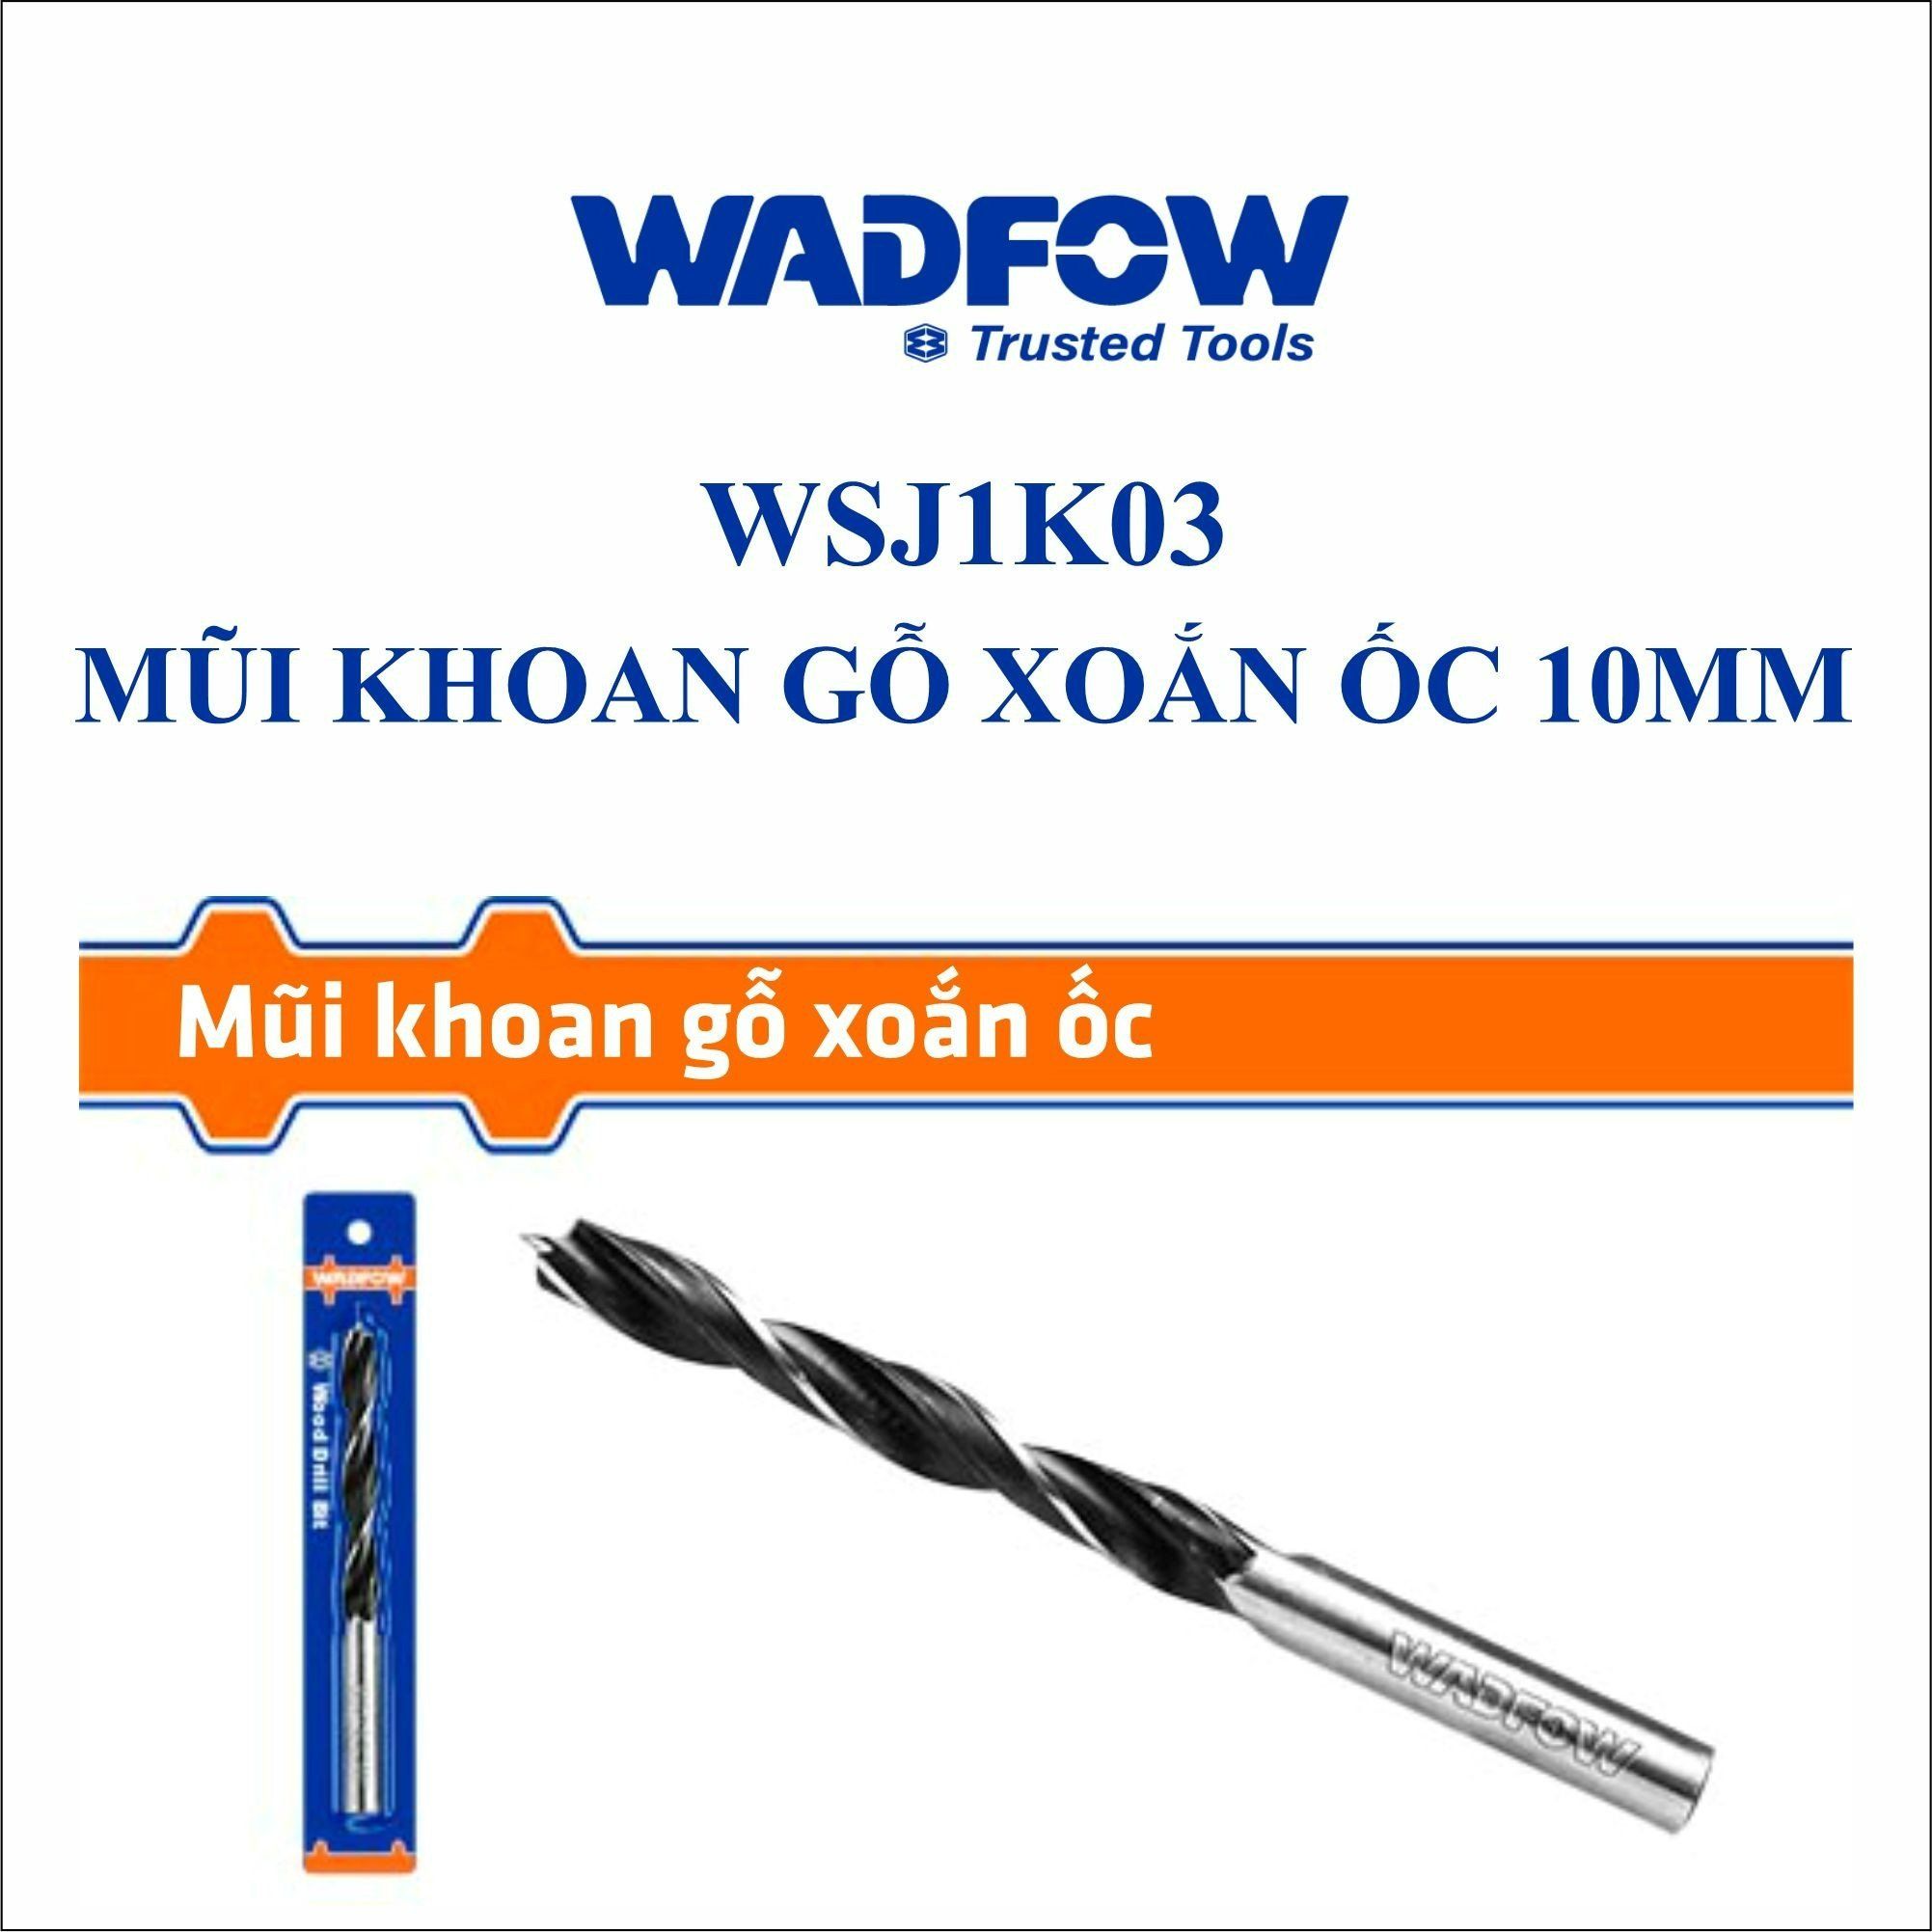  Mũi khoan gỗ xoắn ốc 10mm WADFOW WSJ1K03 